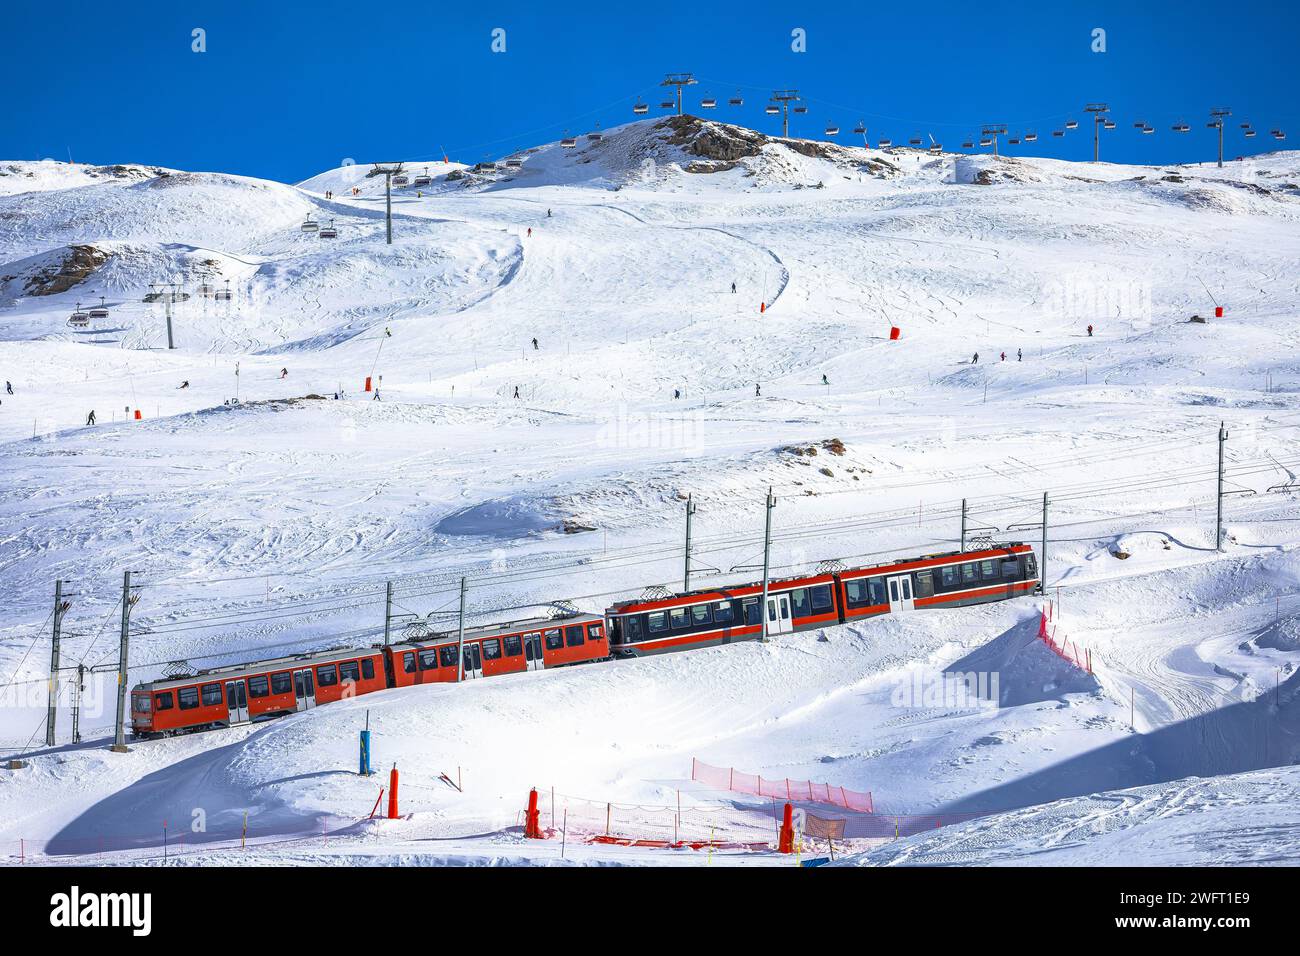 Vista sulla ferrovia Gorngerat bahn e sulla zona sciistica di Zermatt, regione del Vallese in Svizzera Alpi Foto Stock